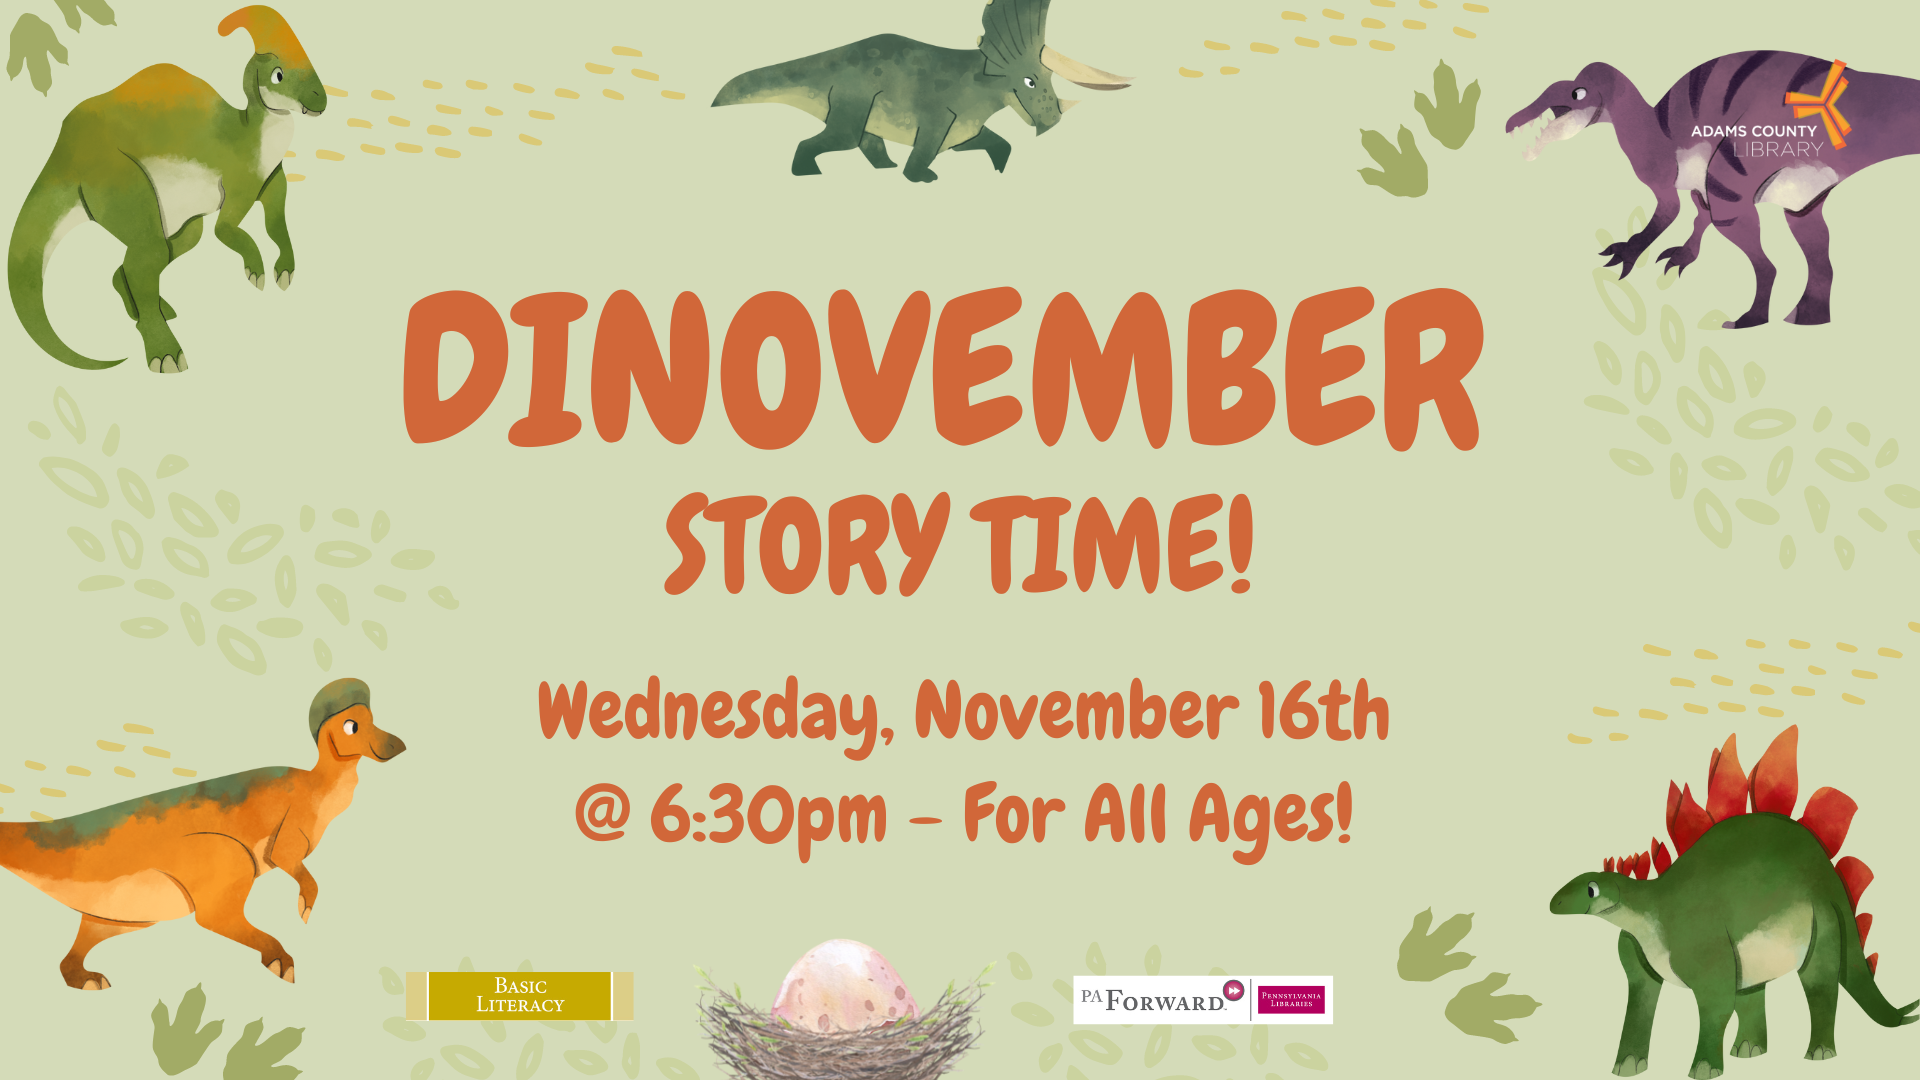 Dinovember Story Time